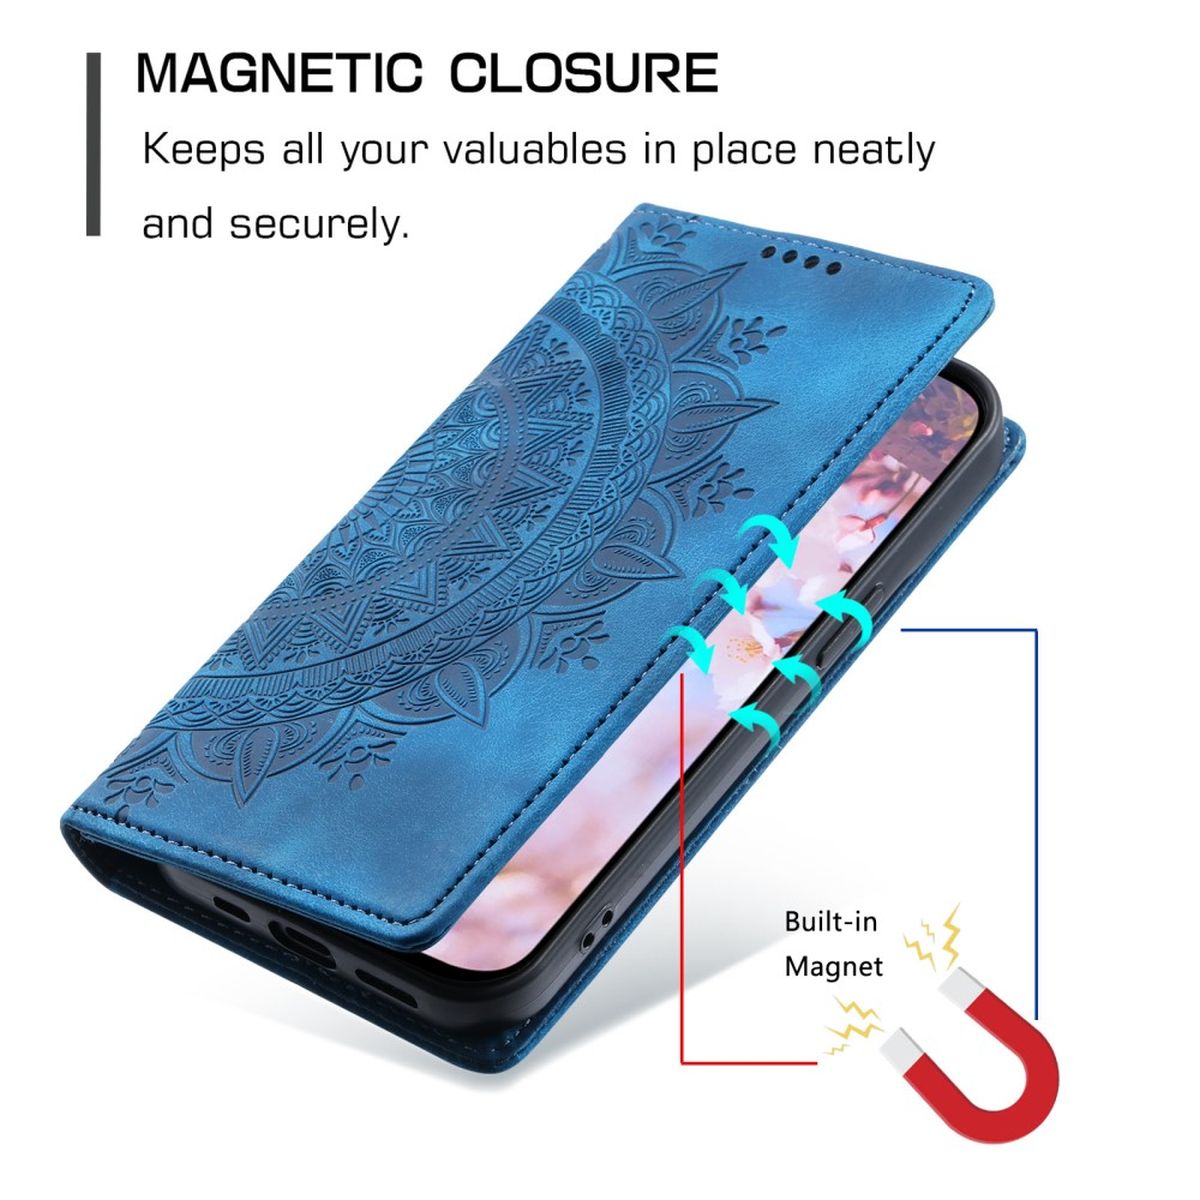 Hülle für Samsung Galaxy S24+ Handyhülle Flip Case Cover Tasche Mandala Blau